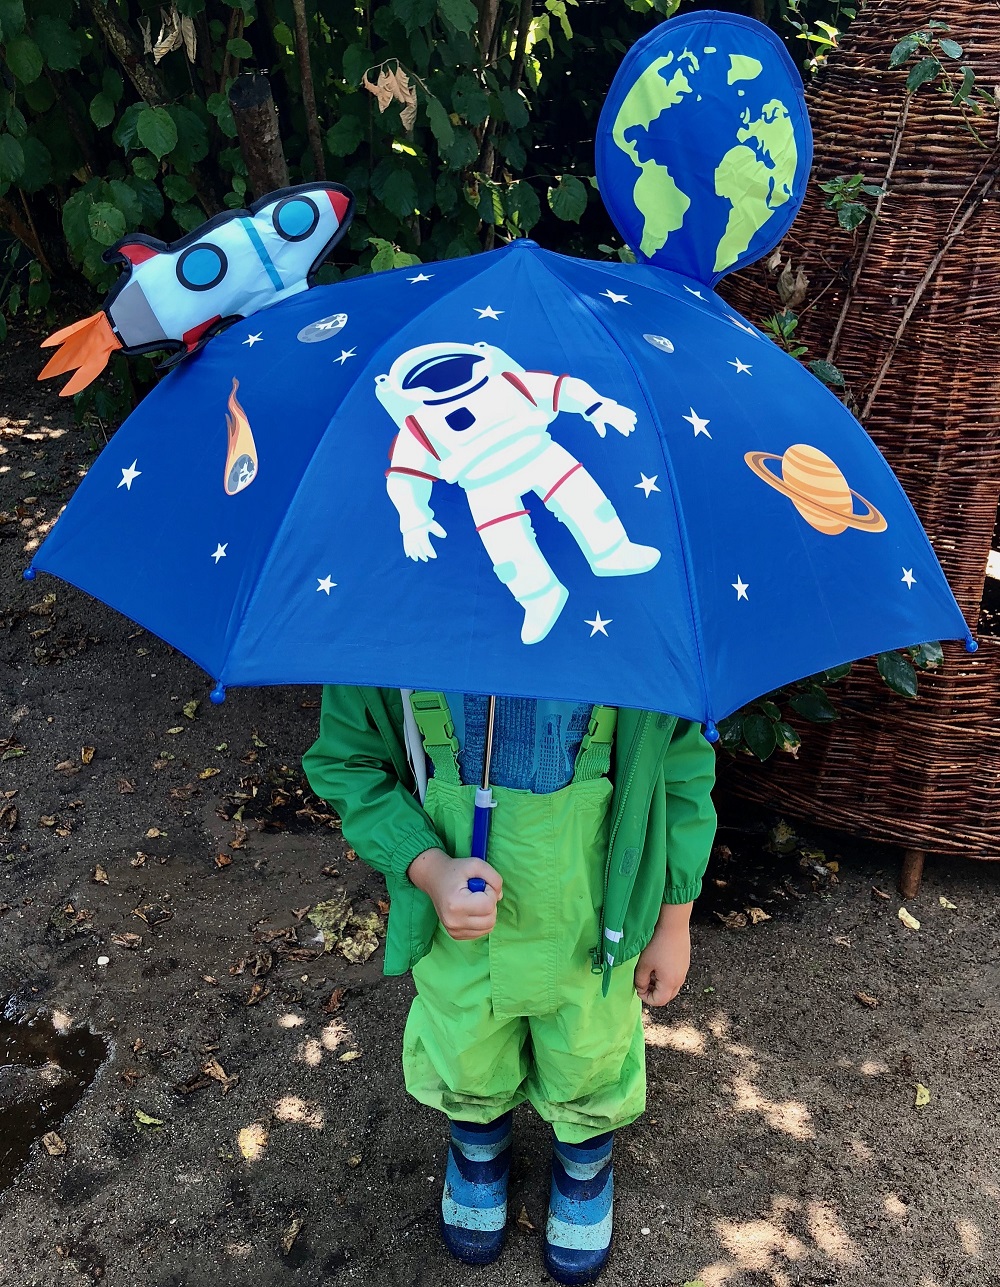 3-D Piraten Schirm Kinderschirm Kinder Stockschirm Regenschirm Räuber Pirat 